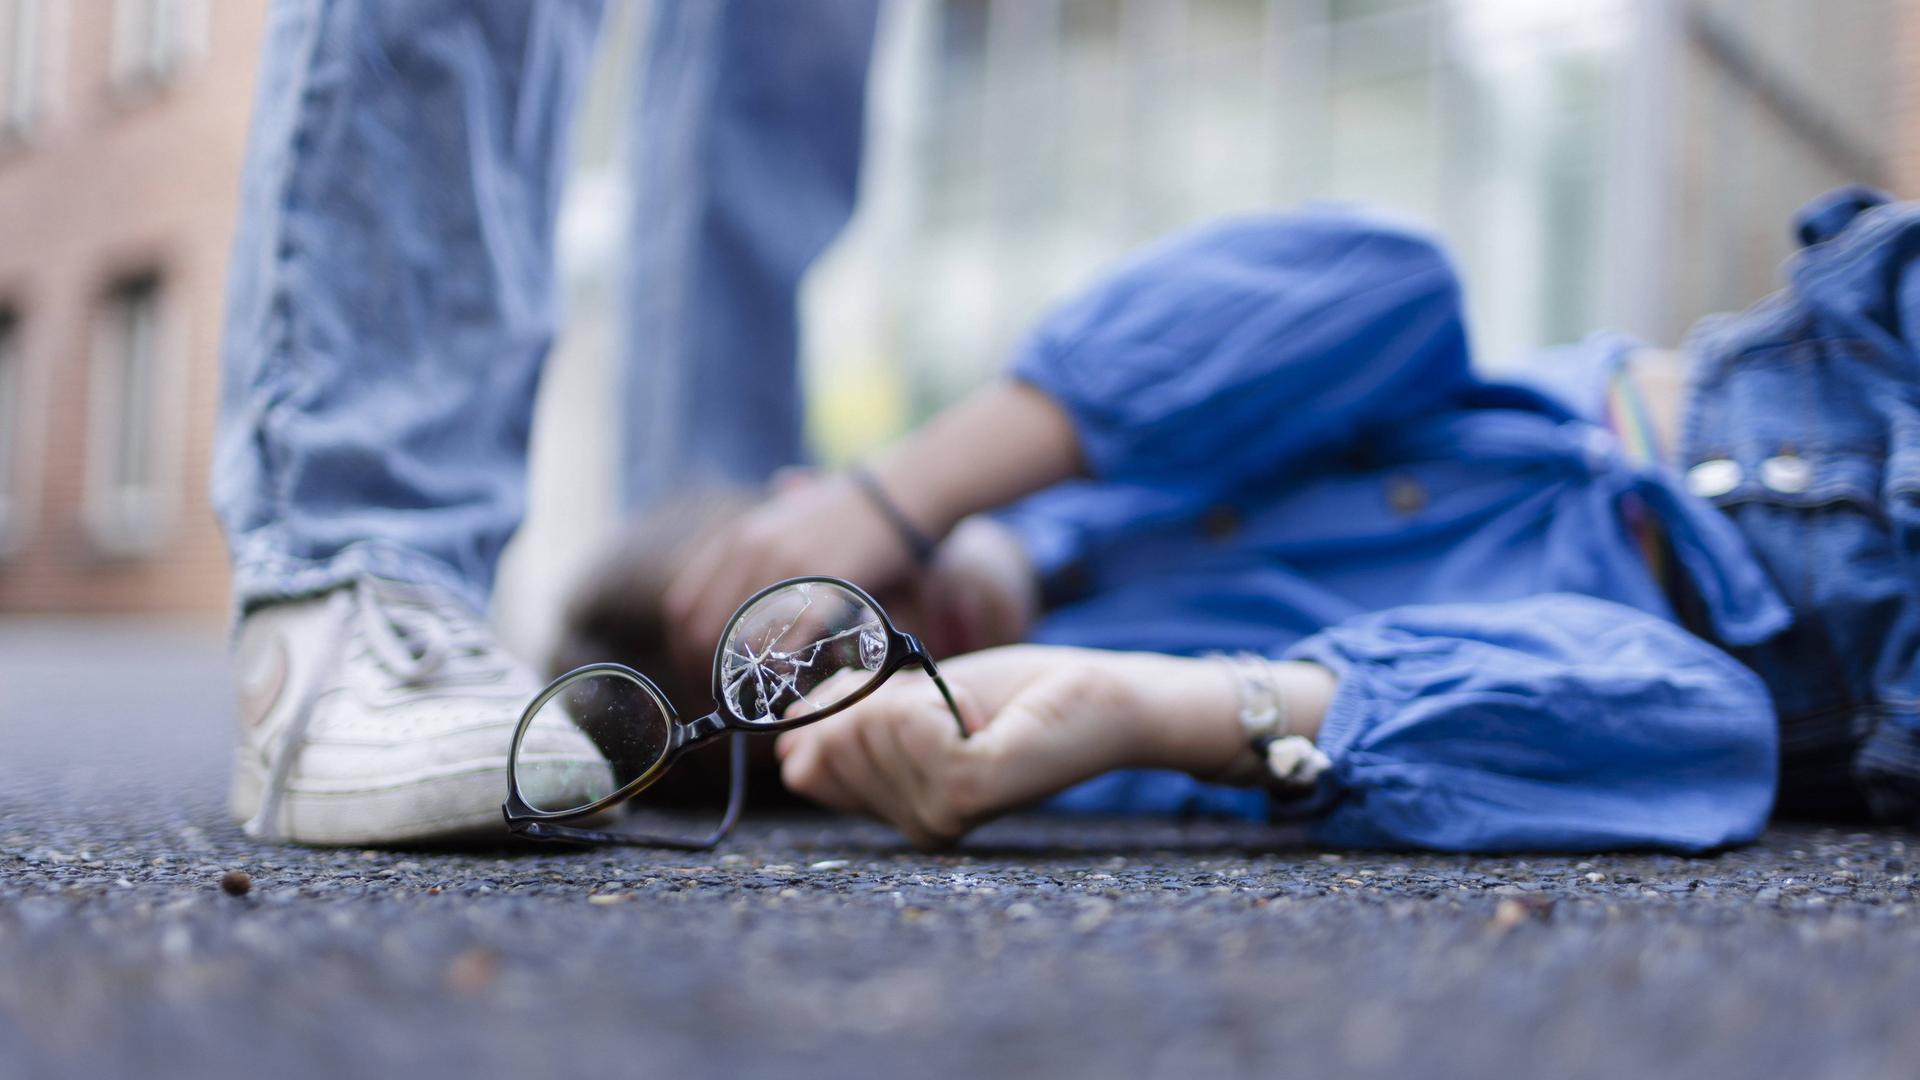 Ein Junge liegt mit einer zerbrochenen Brille auf dem Boden und hält sich die Hand vor das Gesicht (Symbolbild)